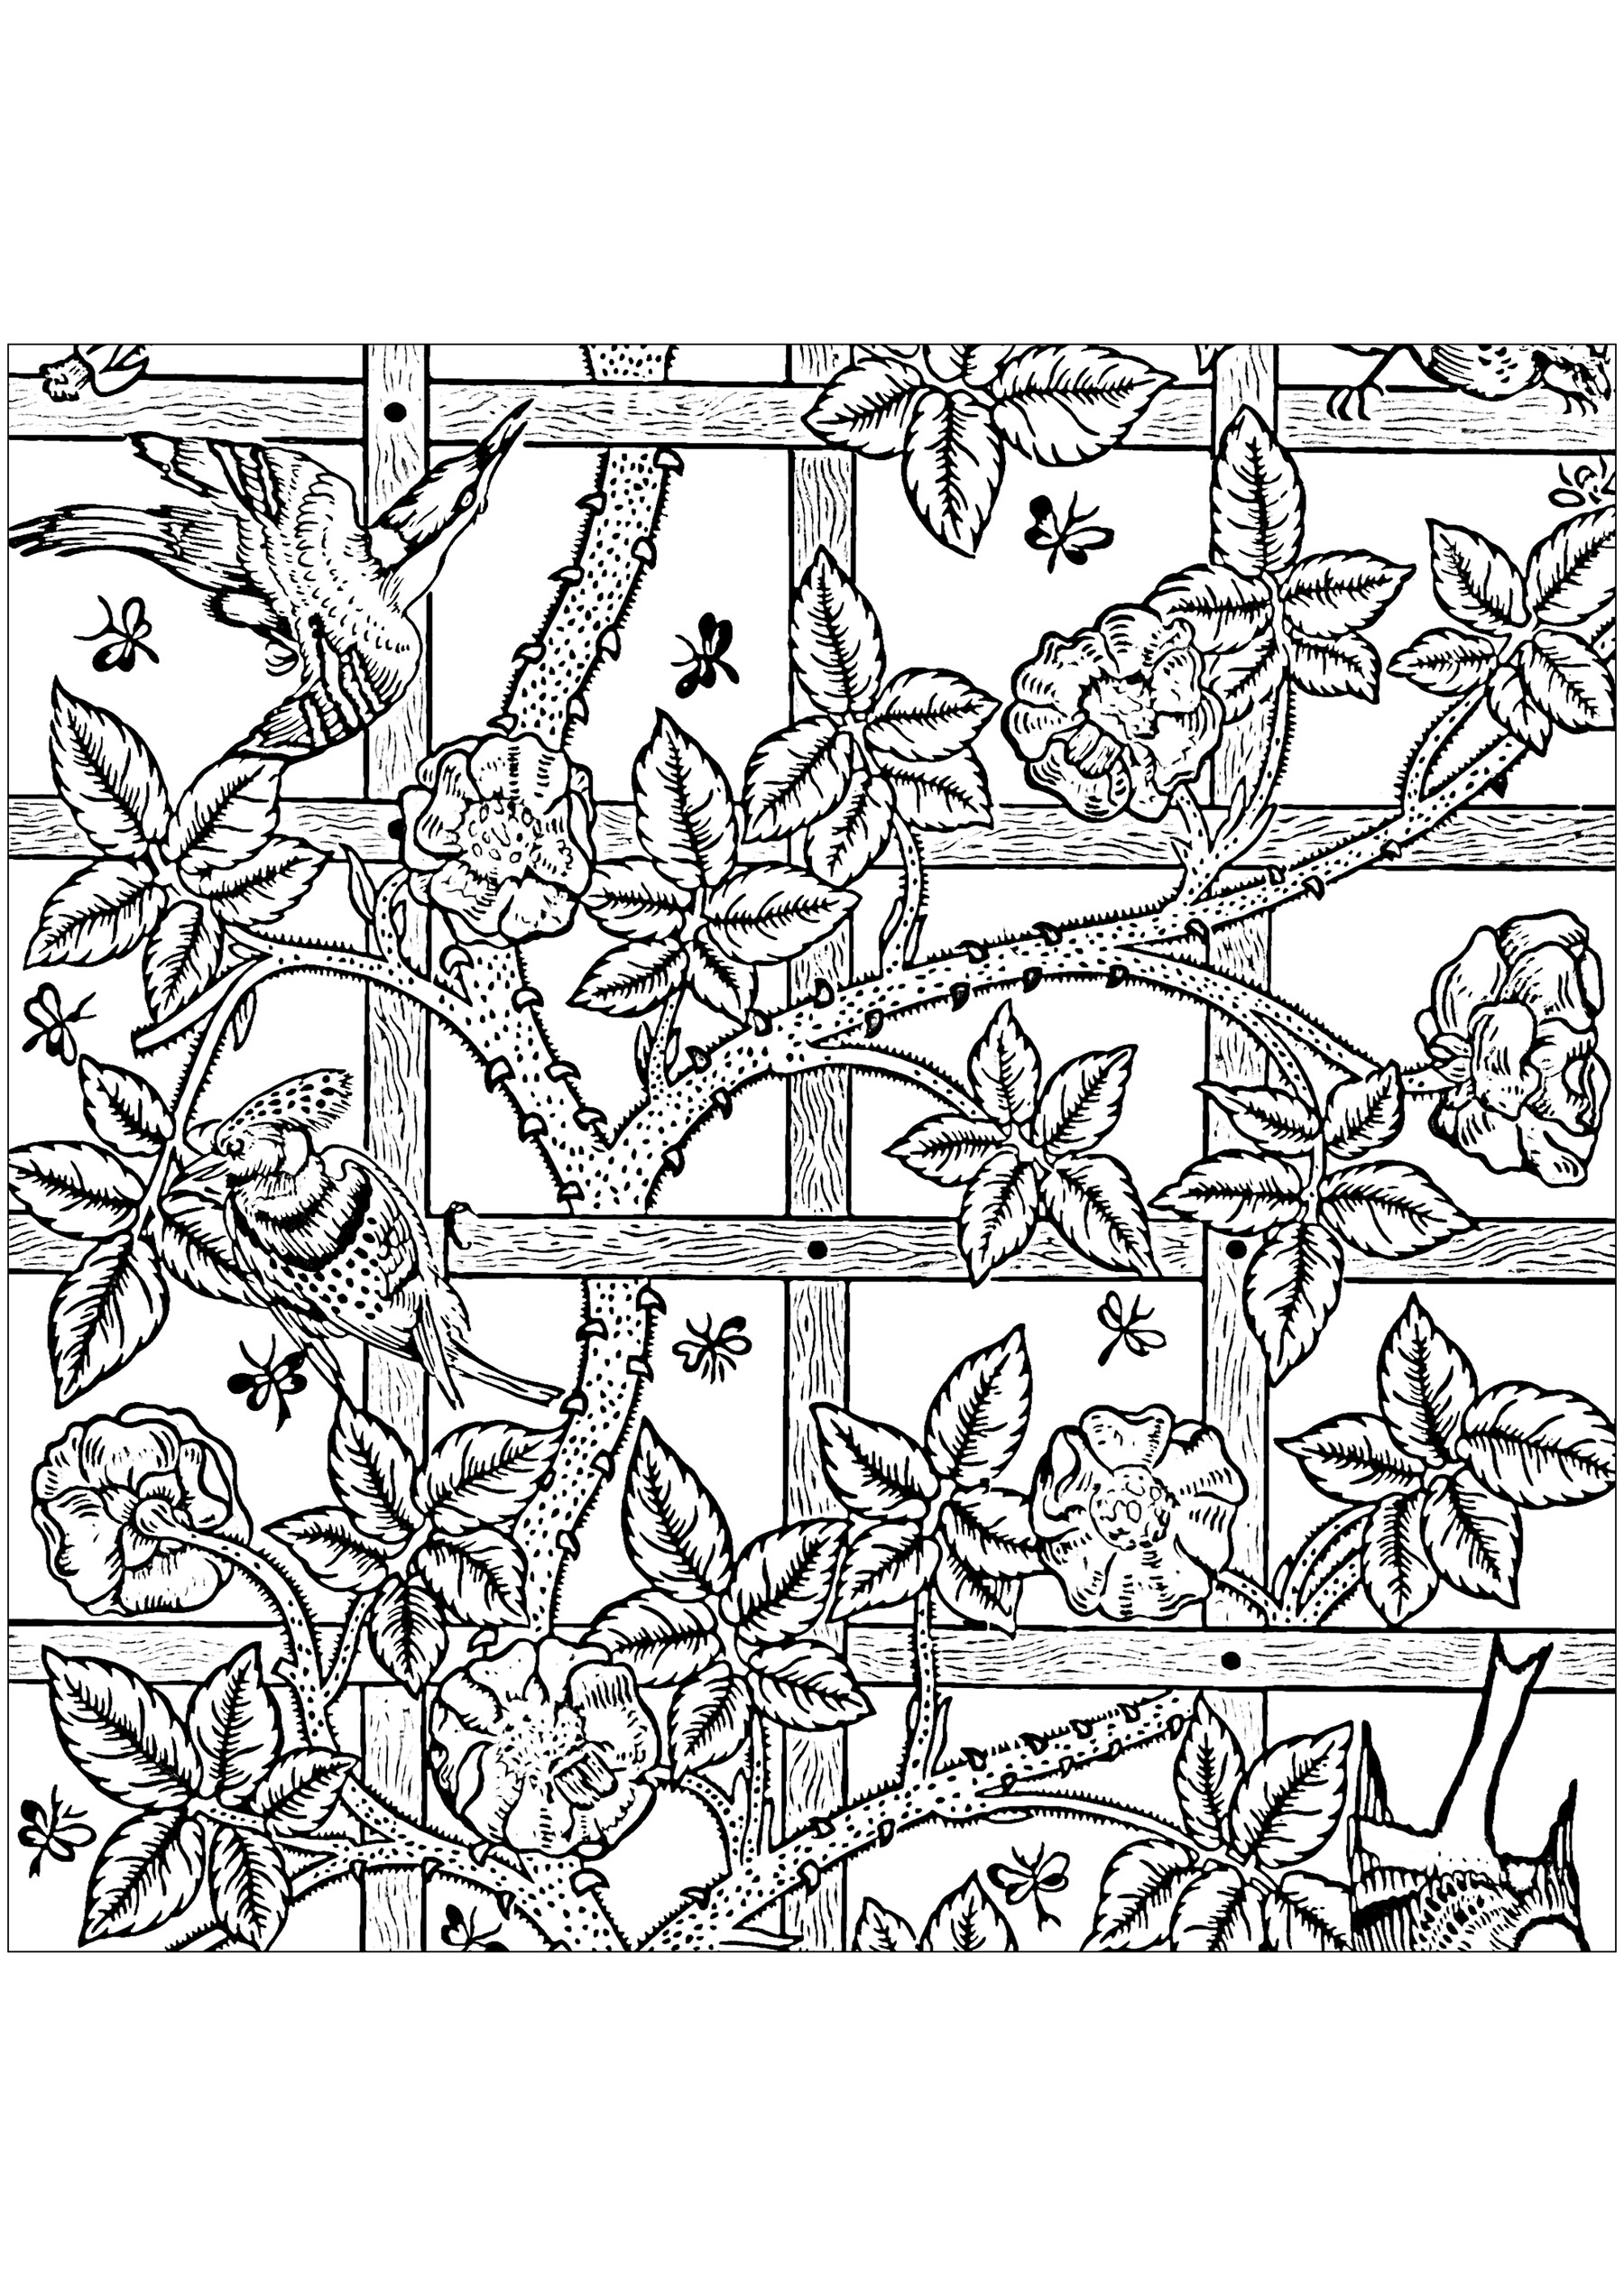 Ausmalbild nach dem Tapetenmuster von William Morris: 'Trellis' aus dem Jahr 1864. In Großbritannien wird seit dem 16. Jahrhundert mit Mustern bedrucktes Papier für die Dekoration von Wänden verwendet. Im späten 19. Jahrhundert waren Tapeten in Wohnungen und öffentlichen Gebäuden weit verbreitet. William Morris entwarf eine Reihe von Tapeten mit sich wiederholenden Mustern, die auf natürlichen Formen und Tieren basierten.